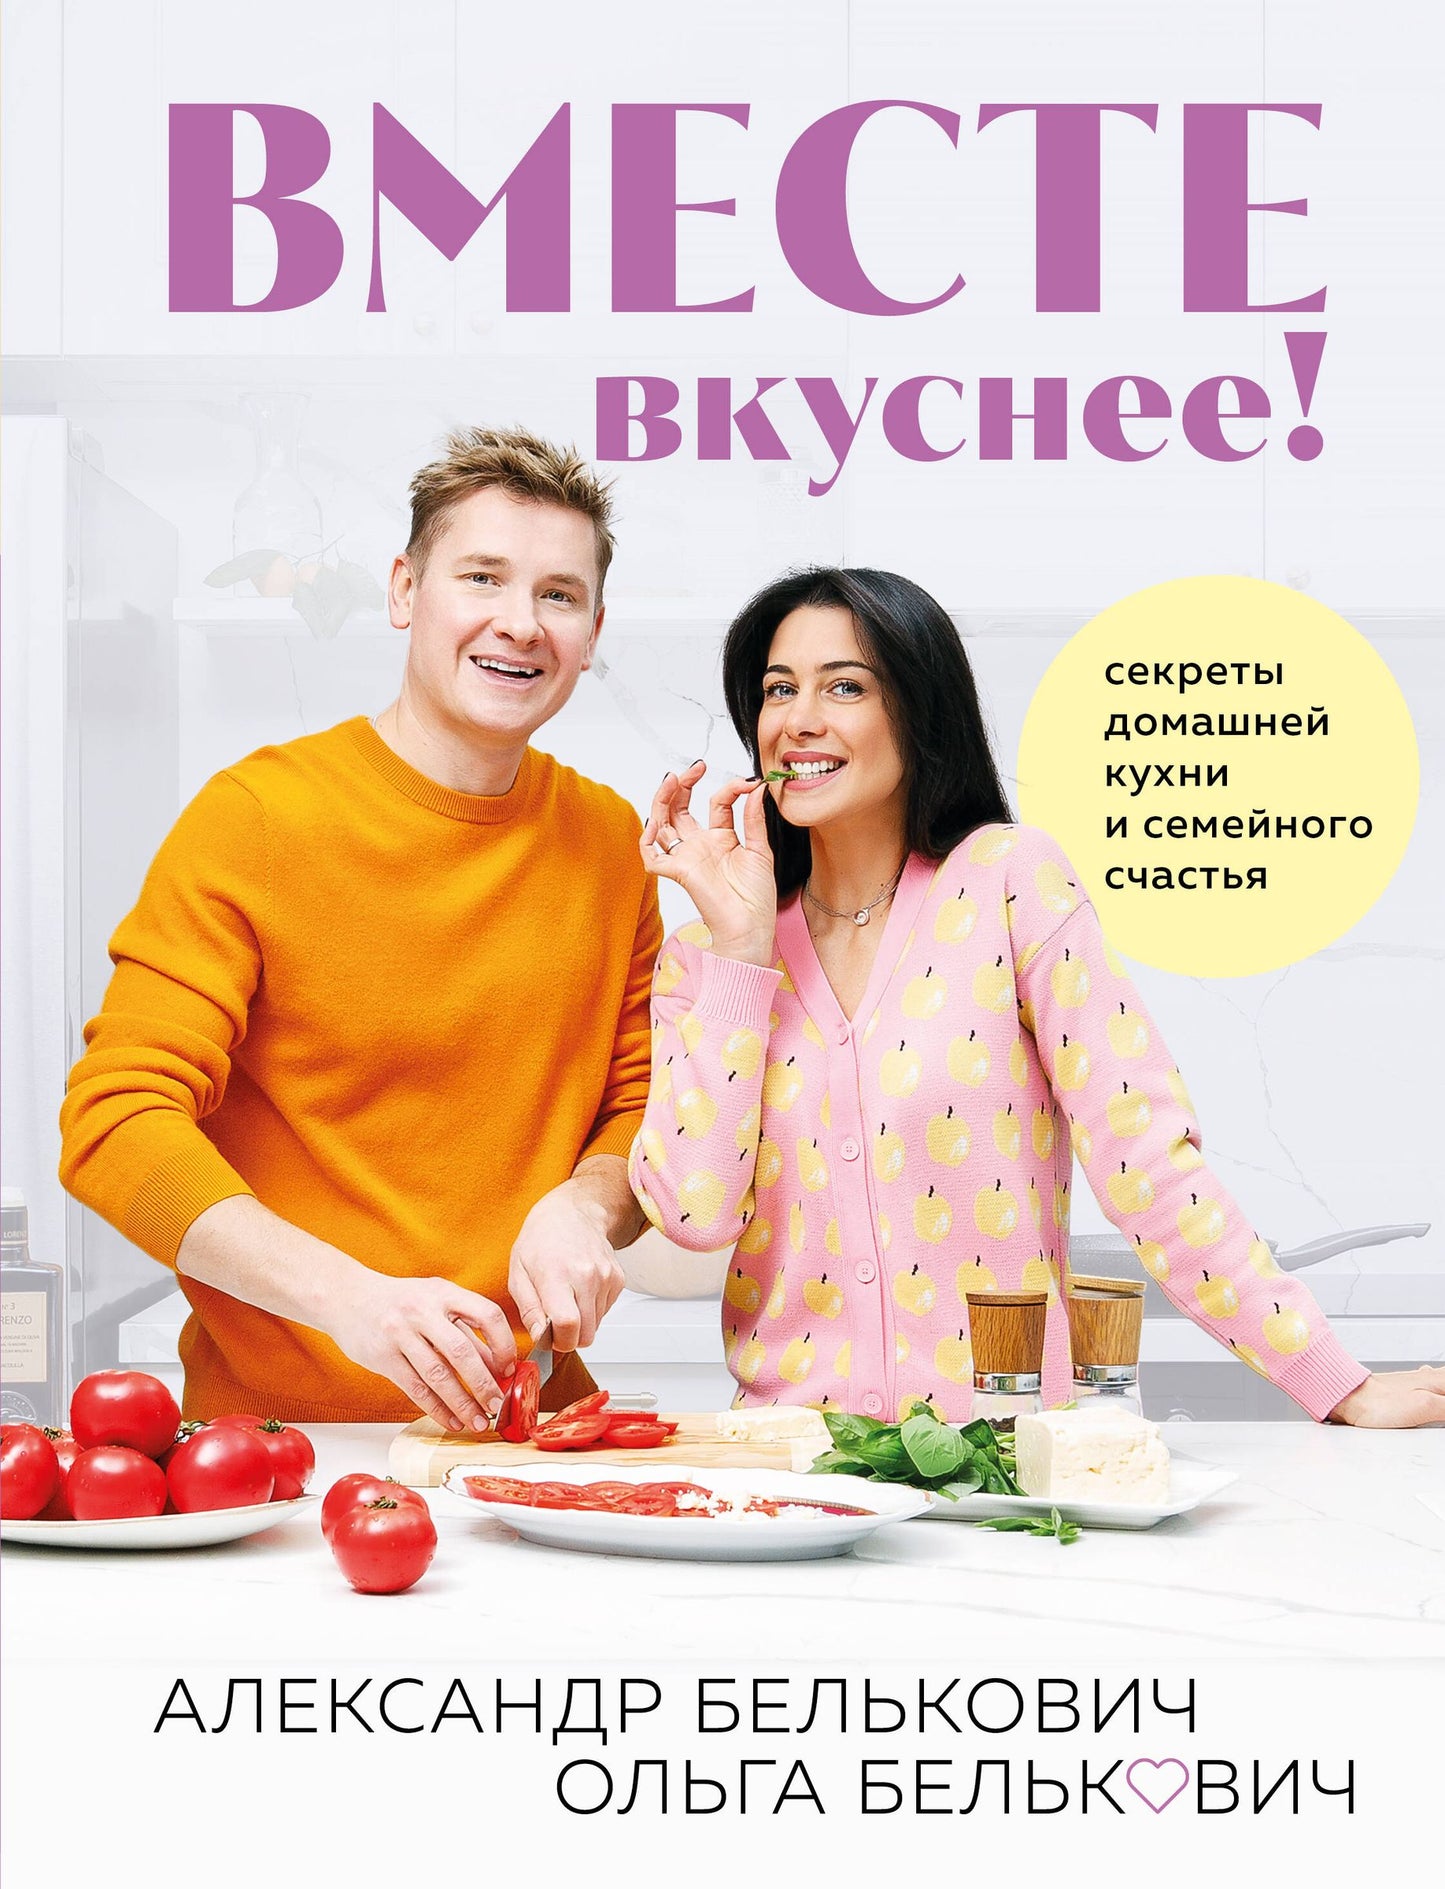 Александр Белькович: Вместе вкуснее! Секреты домашней кухни и семейного счастья